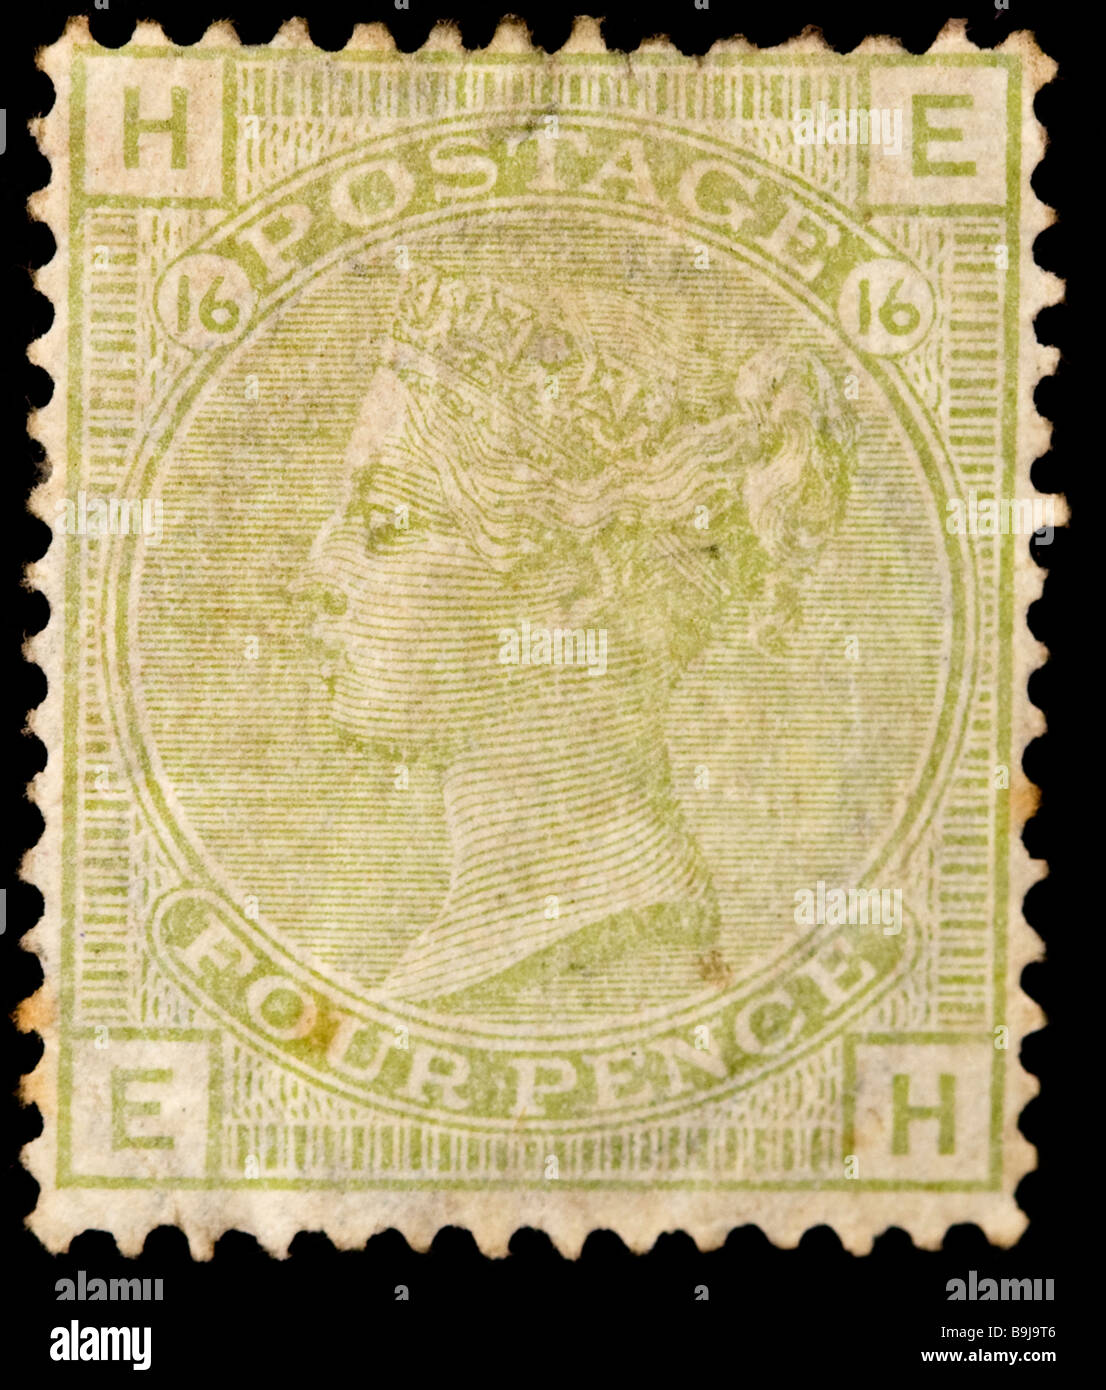 Nahaufnahme eines blassgrünen viktorianischen britischen Poststempels auf schwarzem Hintergrund. Minze, nicht verwendet. Porträt der Königin Victoria. Stockfoto